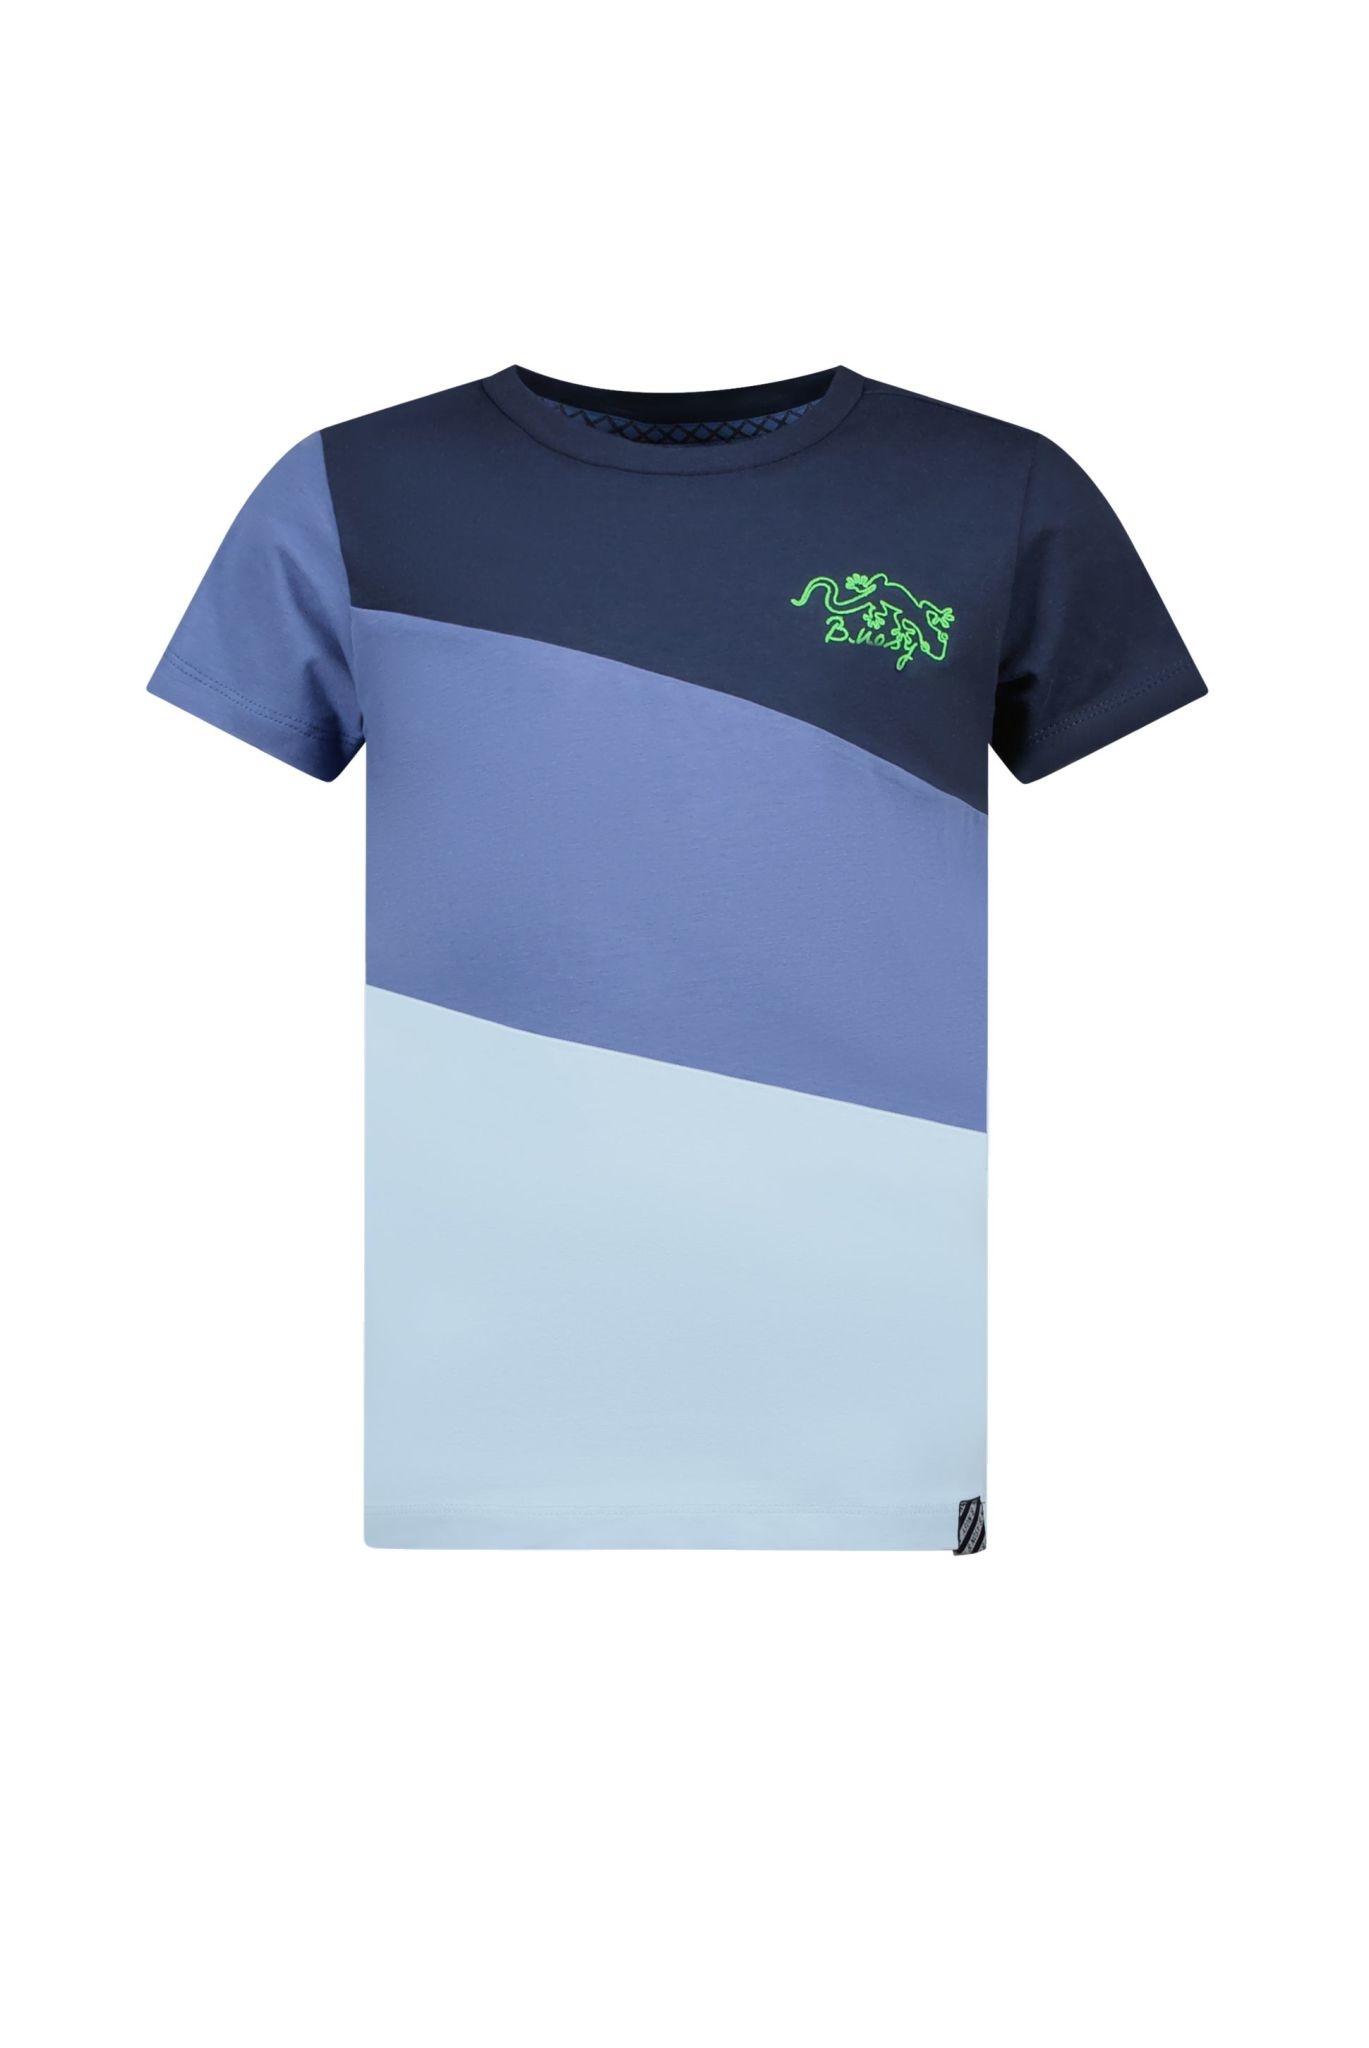 Afbeelding van B.Nosy Jongens t-shirt colorblock gecko navy